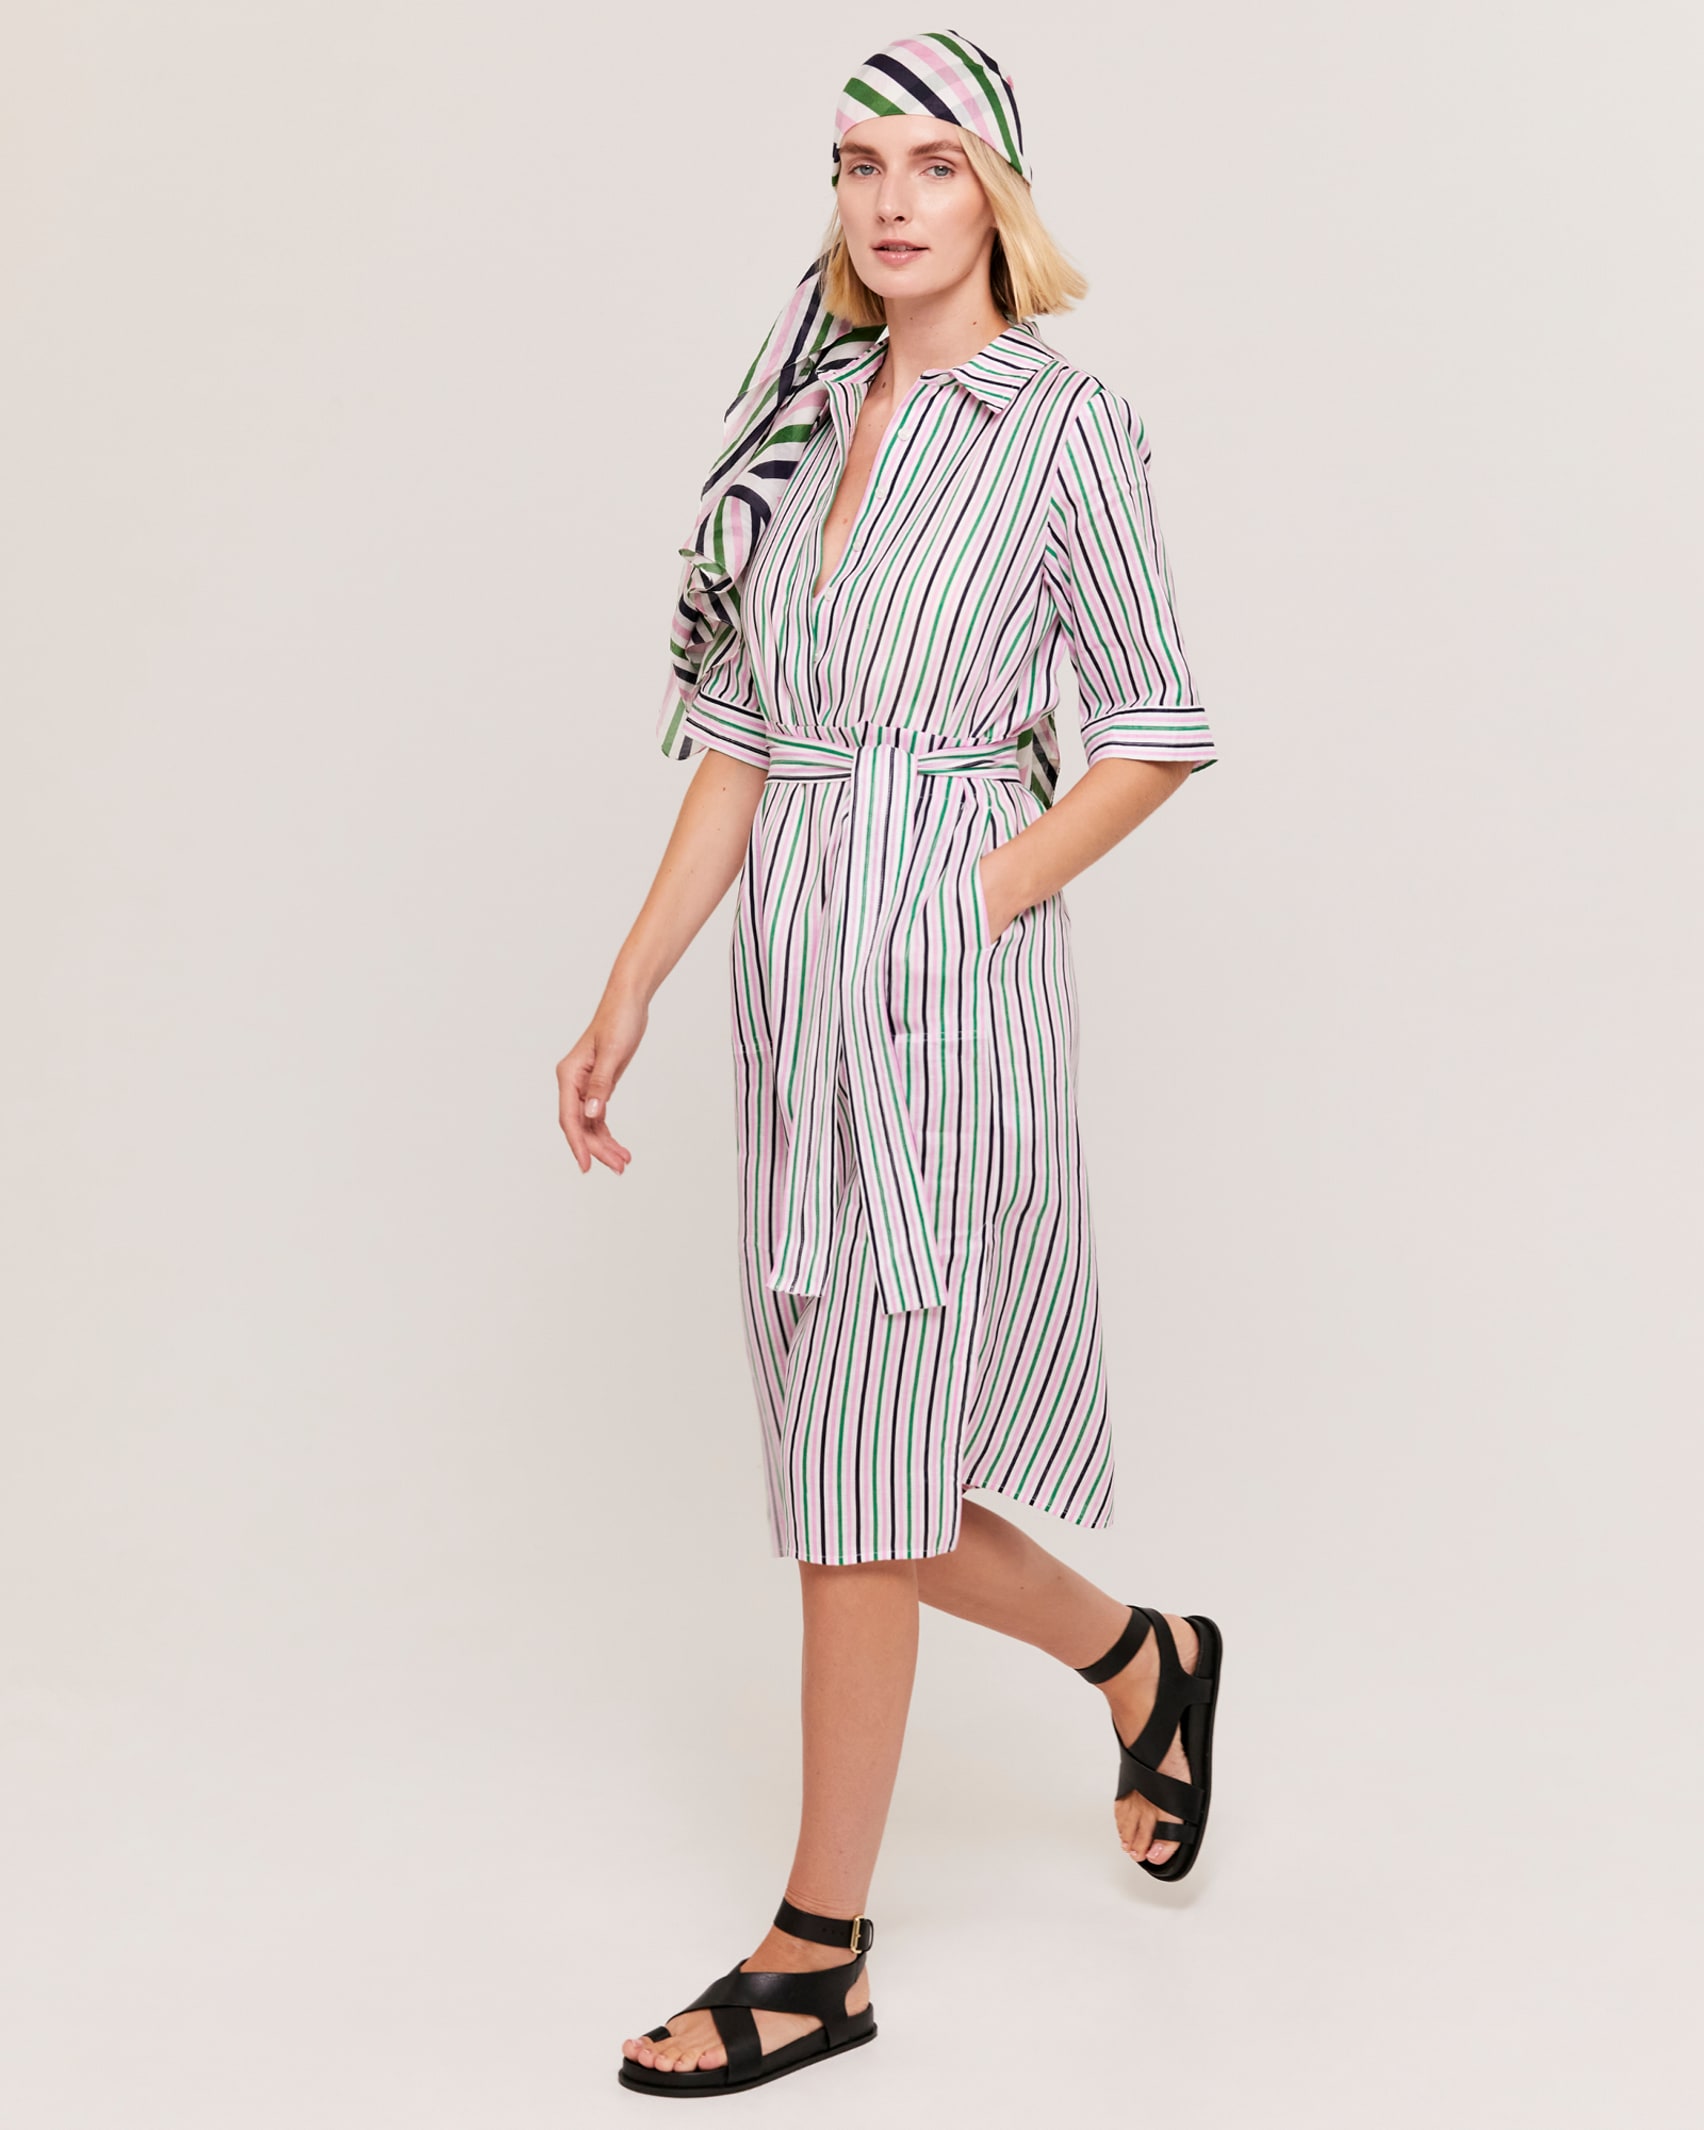 Lexi Stripe Linen Dress in PINK MULTI